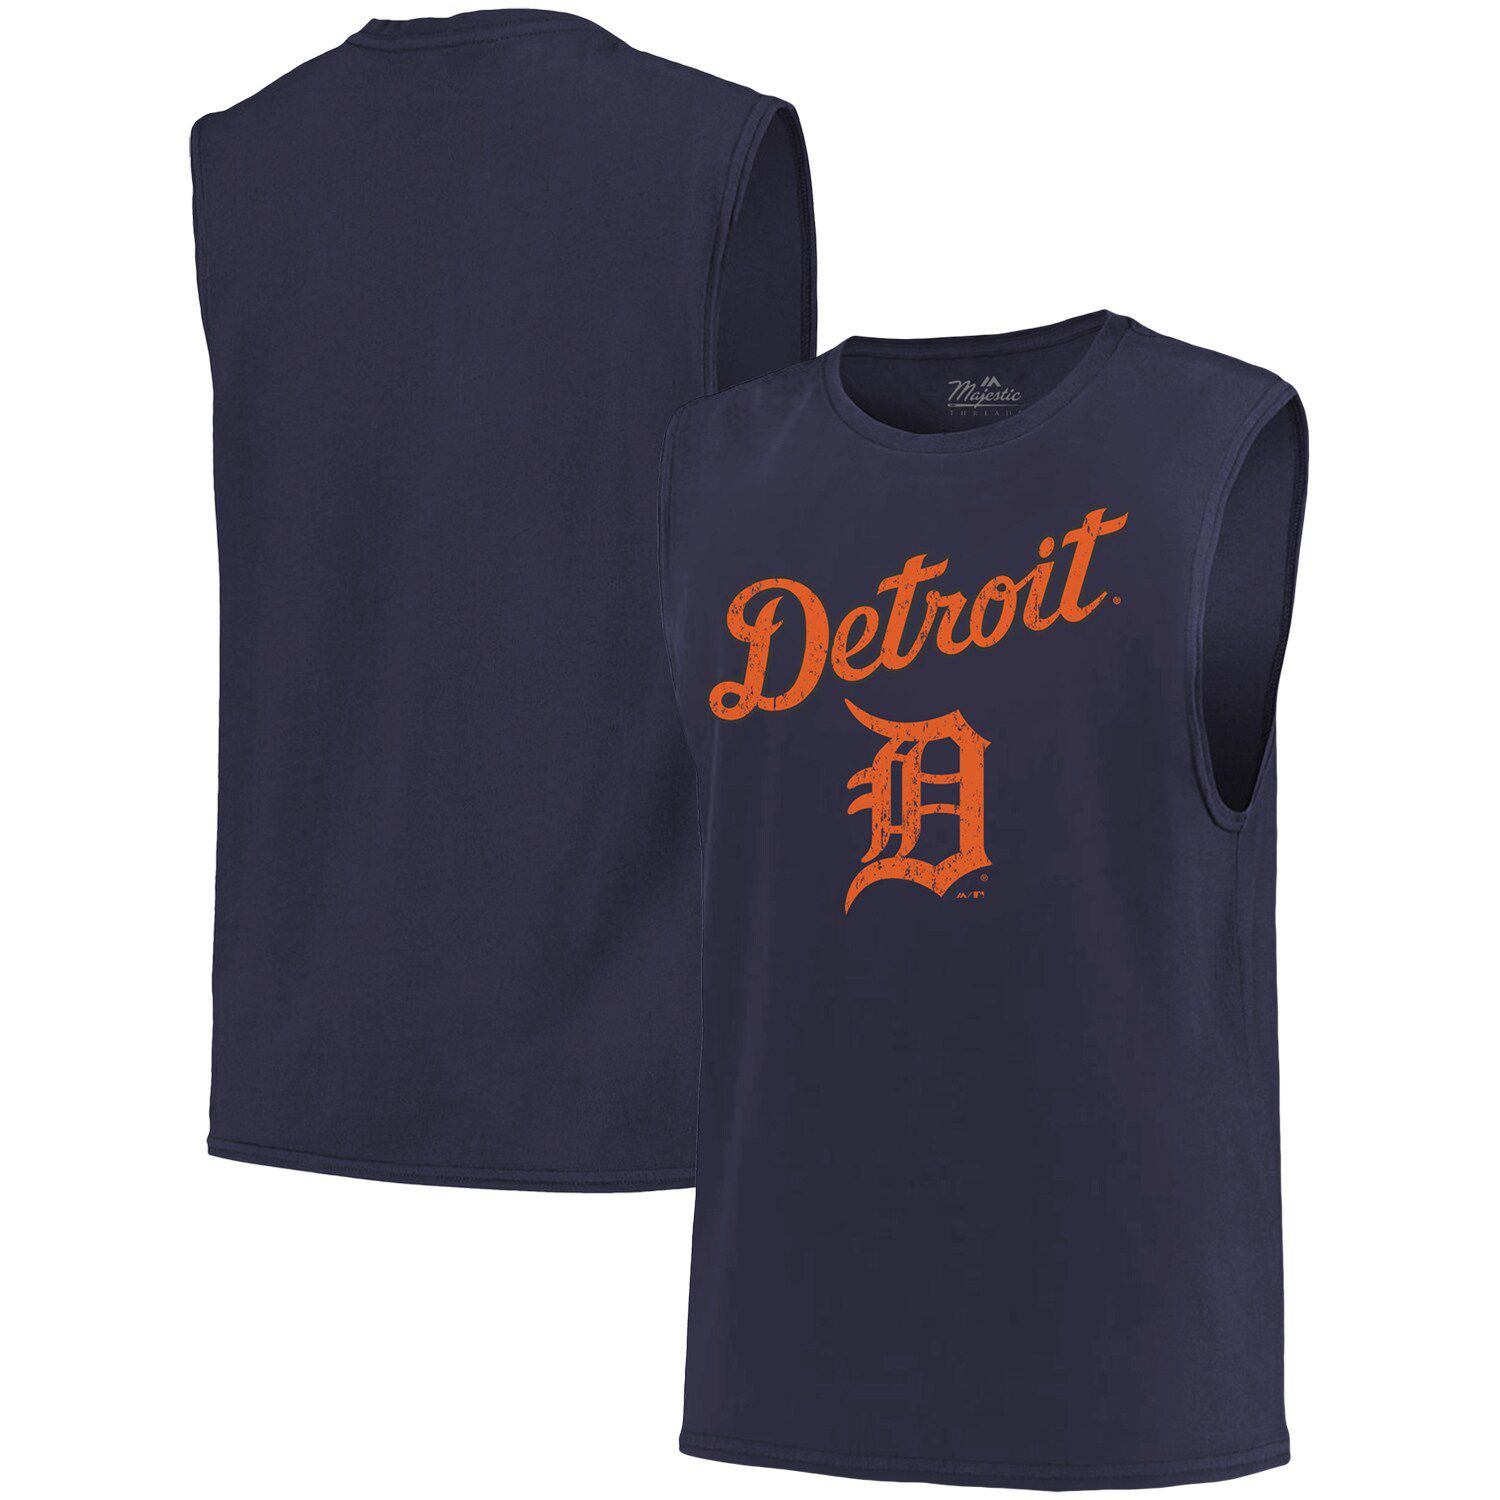 Detroit Tigers Men's Majestic Big & Tall Shirt 2X or 3XT